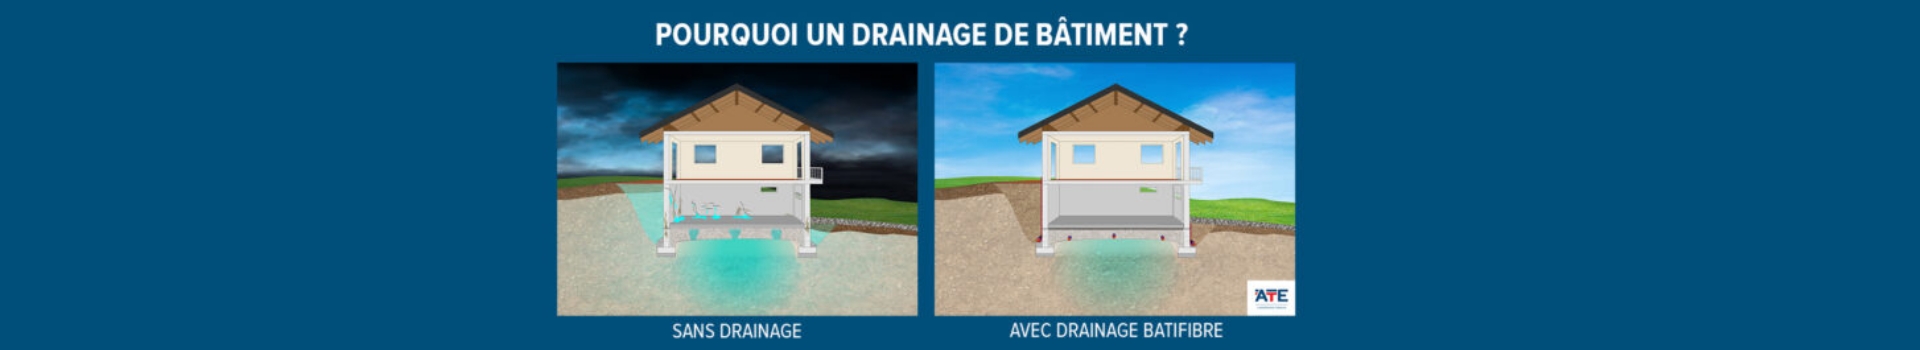 Visuel-en-avant-article-pourquoi-drainage-batiment-ATE-1024x281_banner